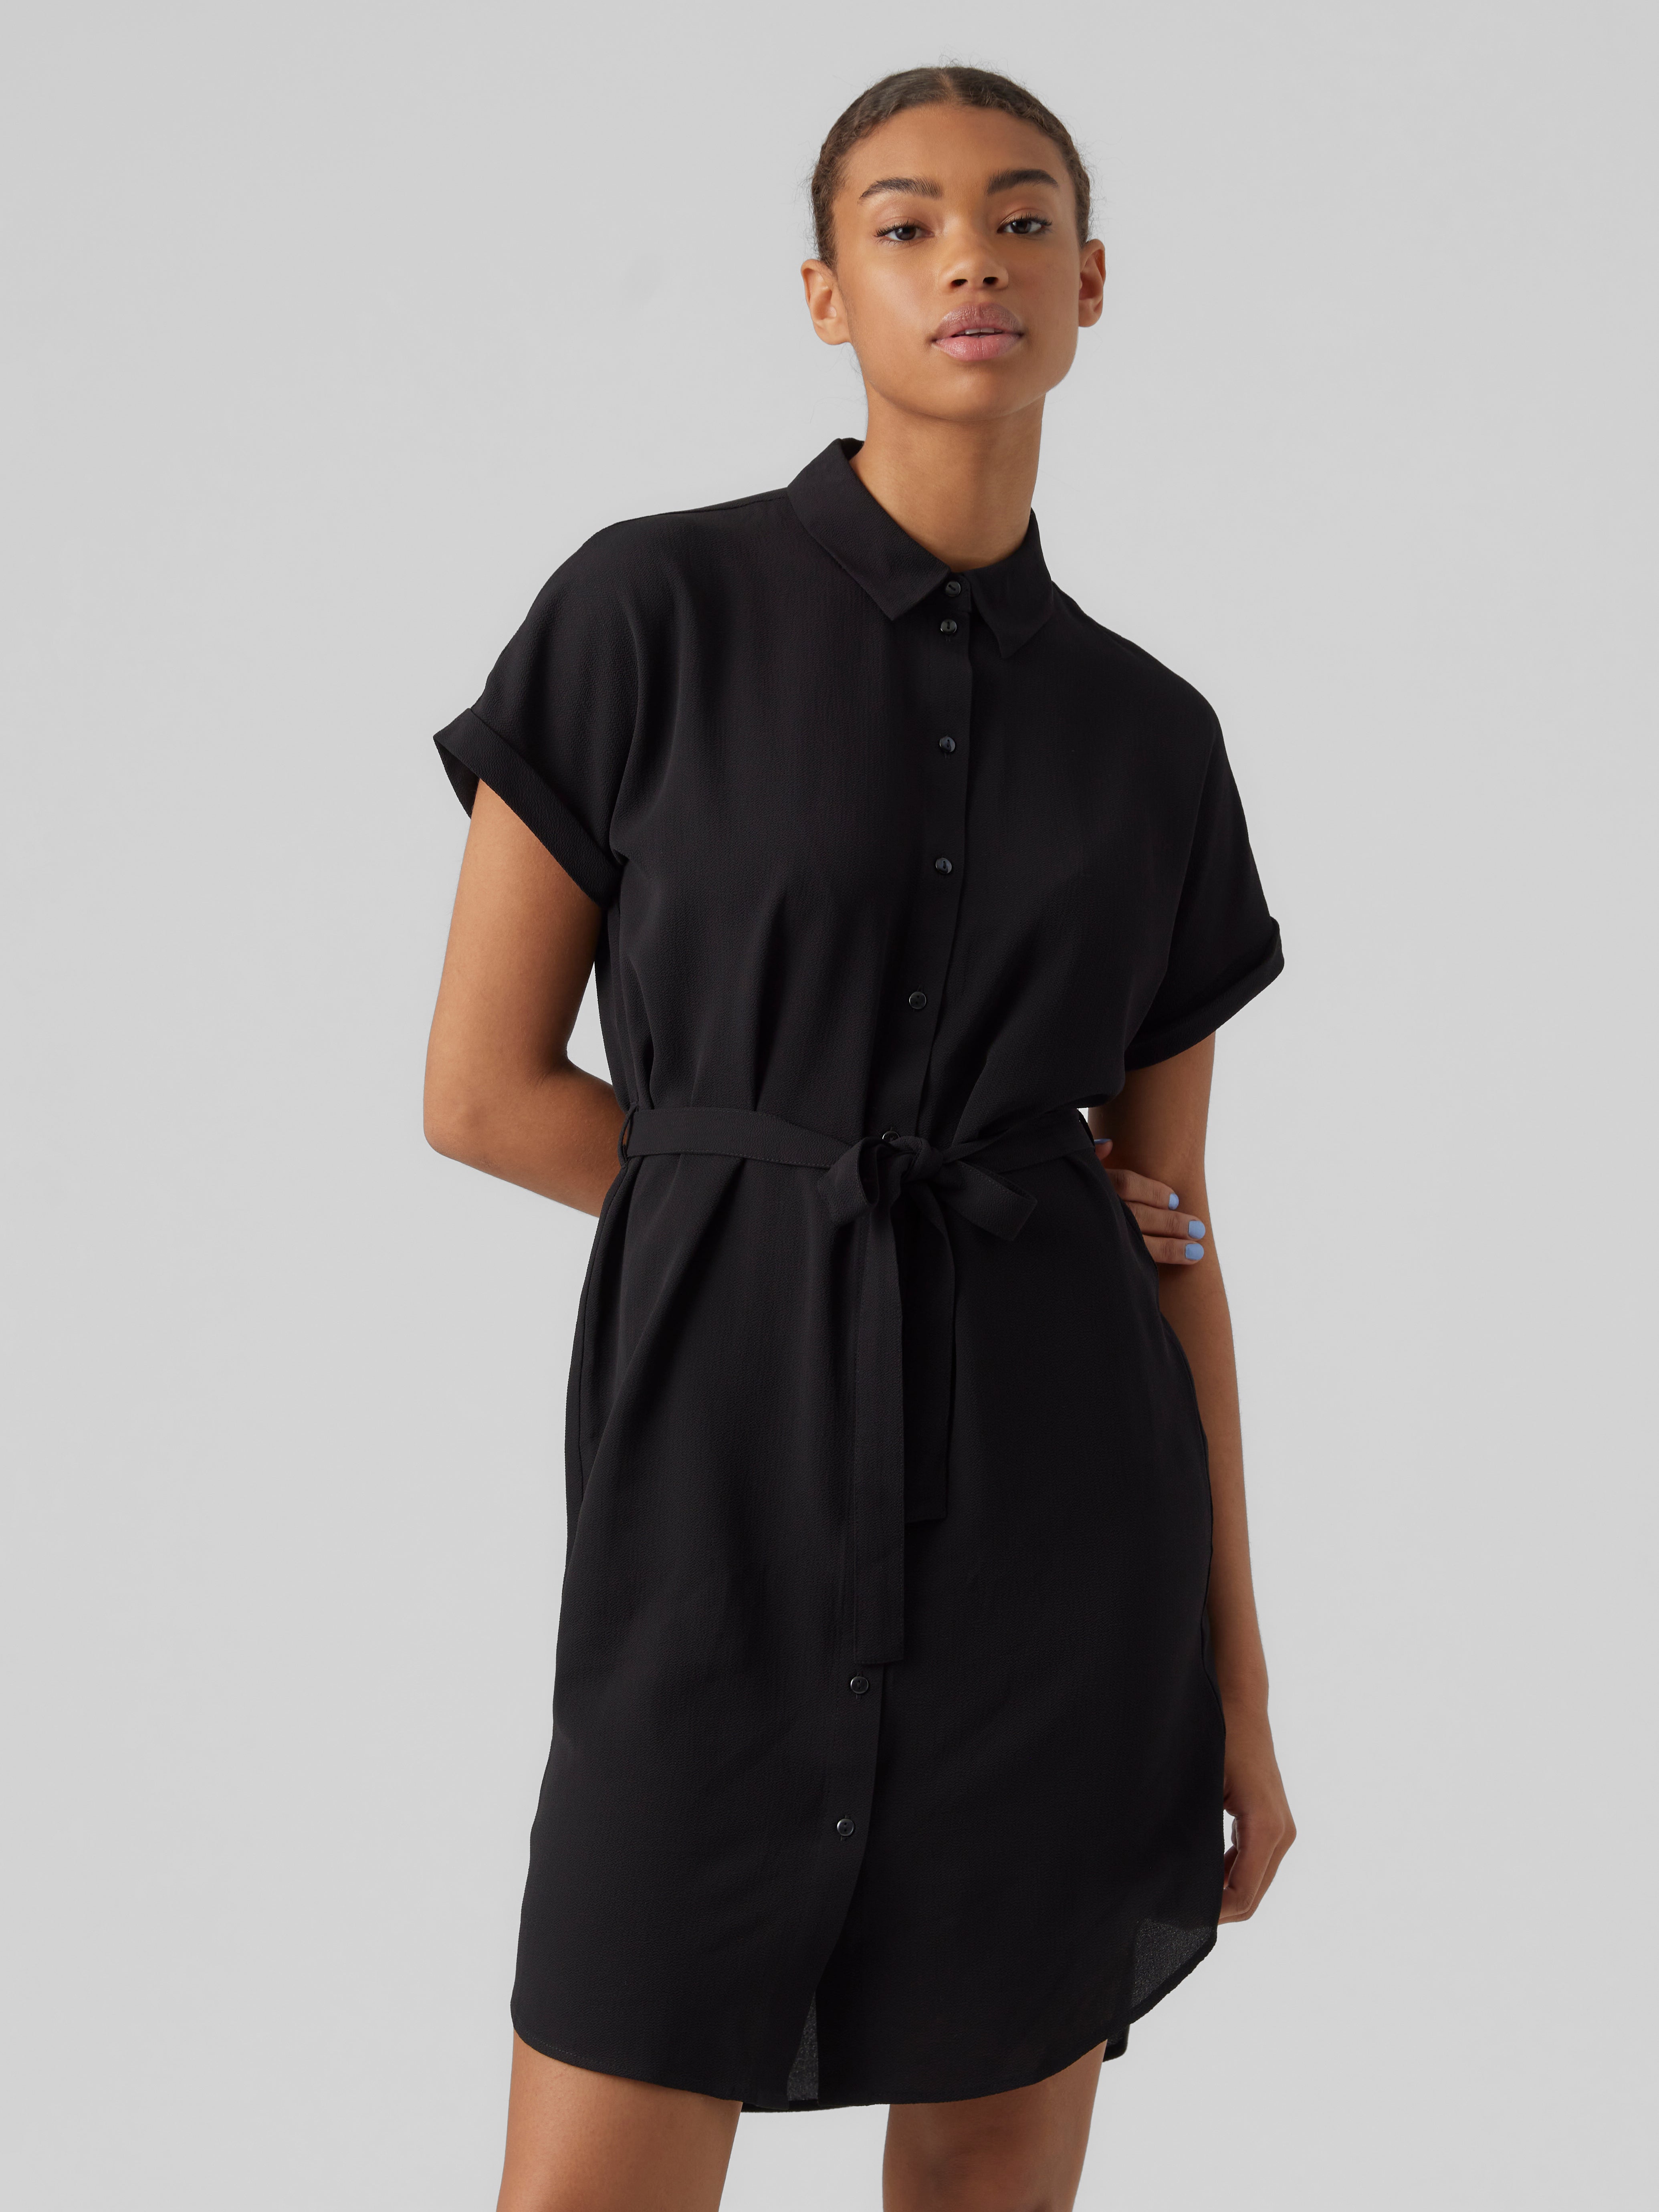 Vero Moda Little Black Dress Small V Neck Ruffle Slimming Short Flutter  Sleeve | eBay